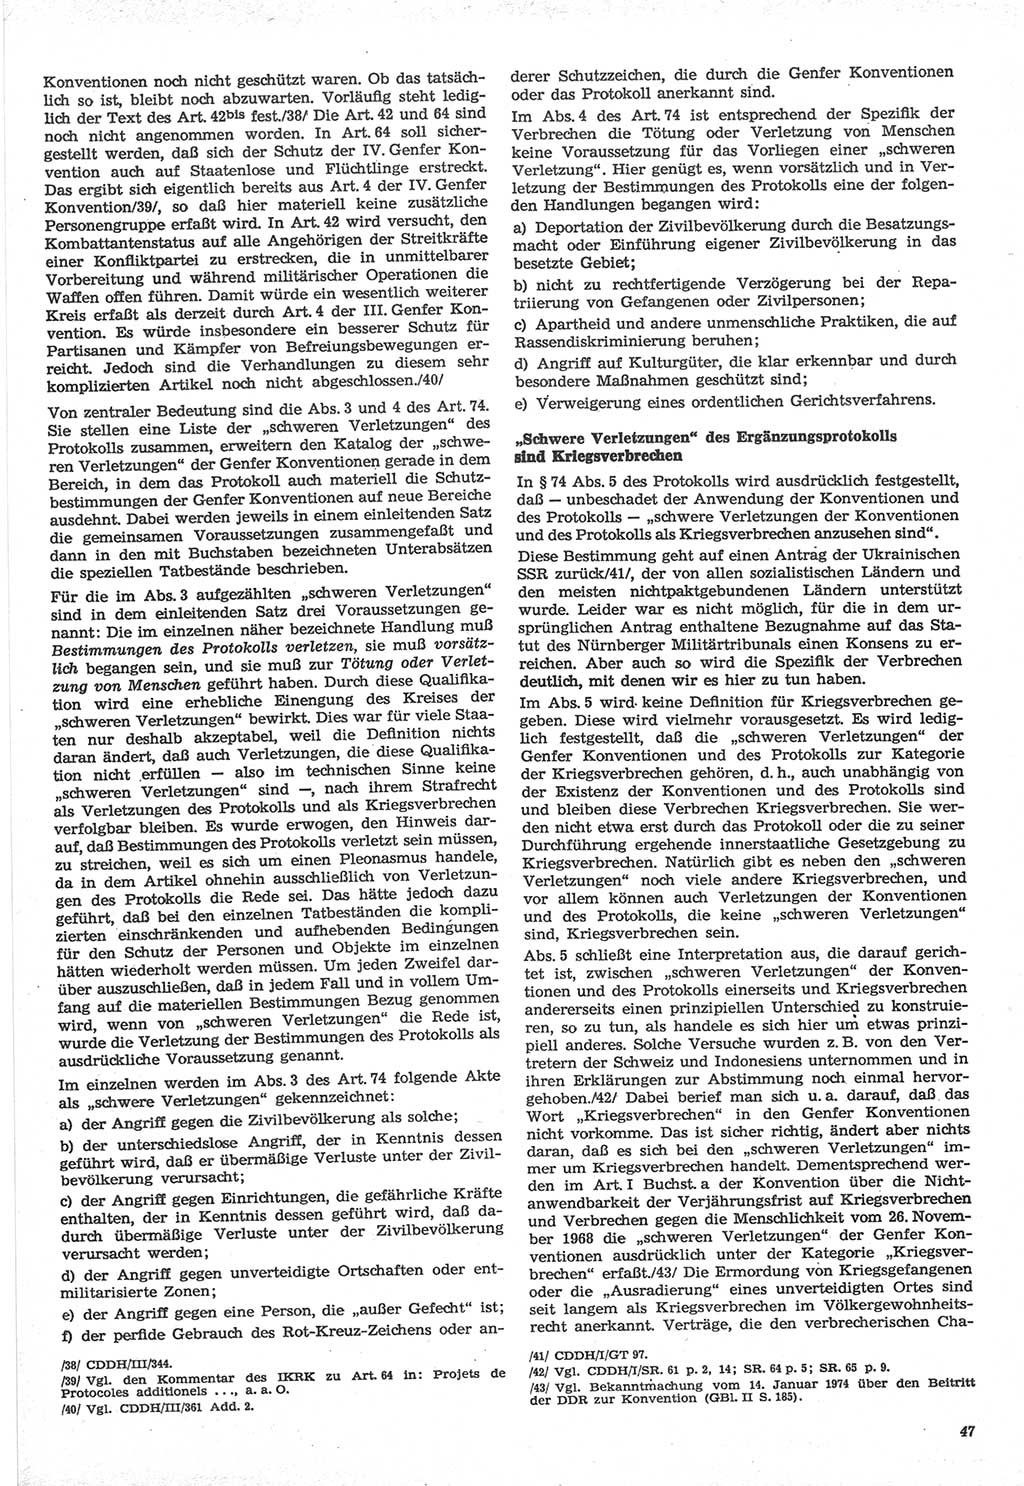 Neue Justiz (NJ), Zeitschrift für Recht und Rechtswissenschaft-Zeitschrift, sozialistisches Recht und Gesetzlichkeit, 31. Jahrgang 1977, Seite 47 (NJ DDR 1977, S. 47)